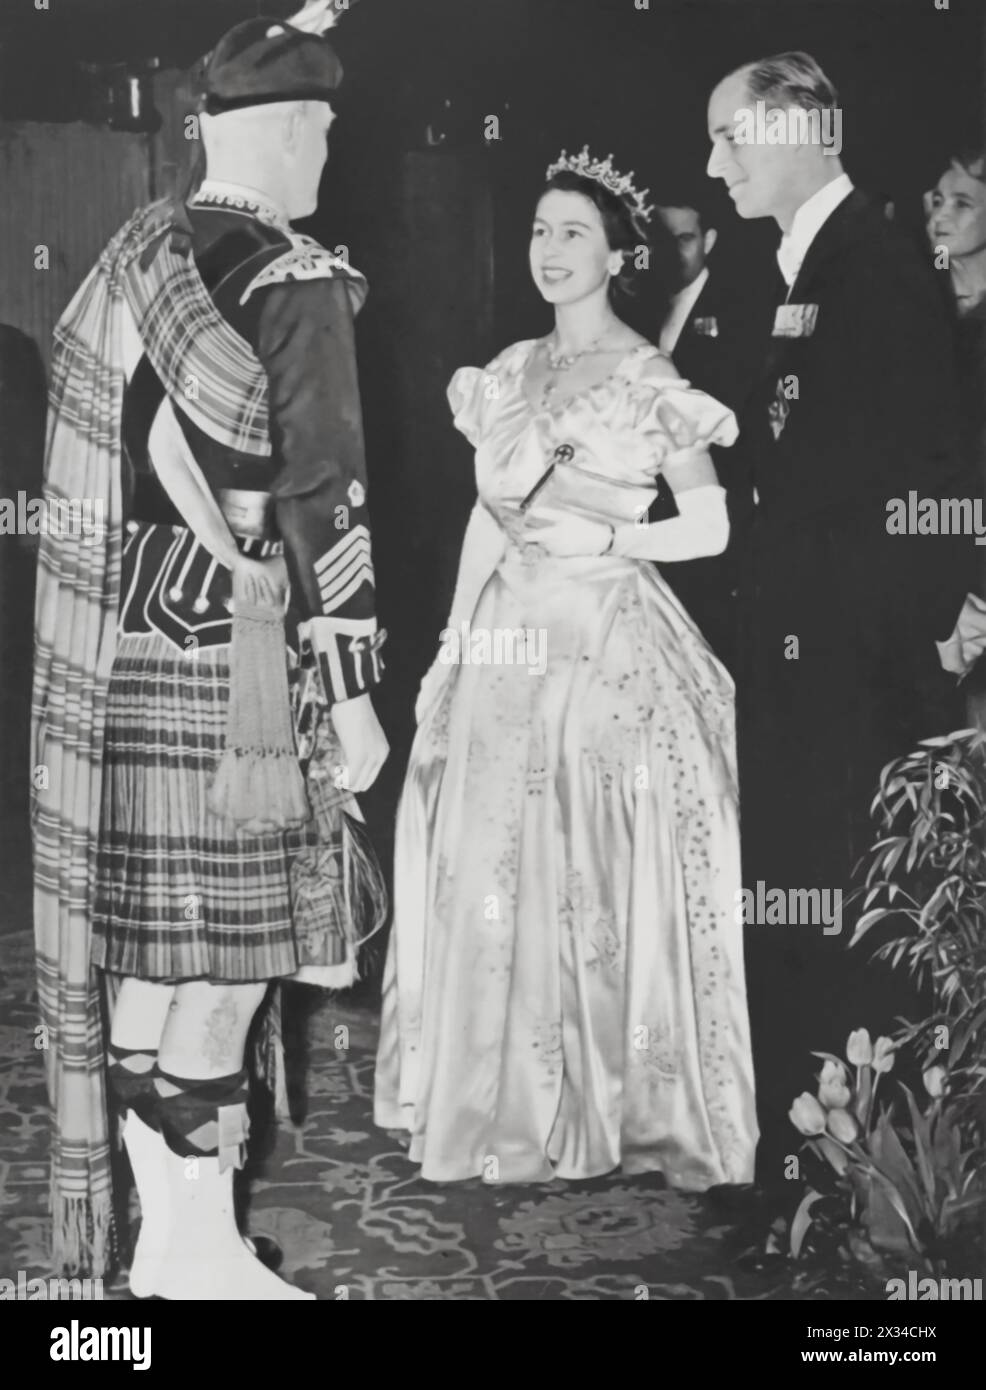 Prinzessin Elizabeth und ihr Ehemann Philip, der Herzog von Edinburgh, werden 1949 bei einem Besuch in Edinburgh gezeigt. Das Königspaar wird im Gespräch mit einem schottischen Sergeant-Major gefangen genommen, der in volle Regimentale gekleidet ist. Solche öffentlichen Interaktionen wurden immer häufiger, als Elizabeth sich auf ihre zukünftige Rolle als Thronfolgerin vorbereitete und ihr wachsendes Engagement für bürgerliche Pflichten und die Öffentlichkeit unterstrich. Stockfoto